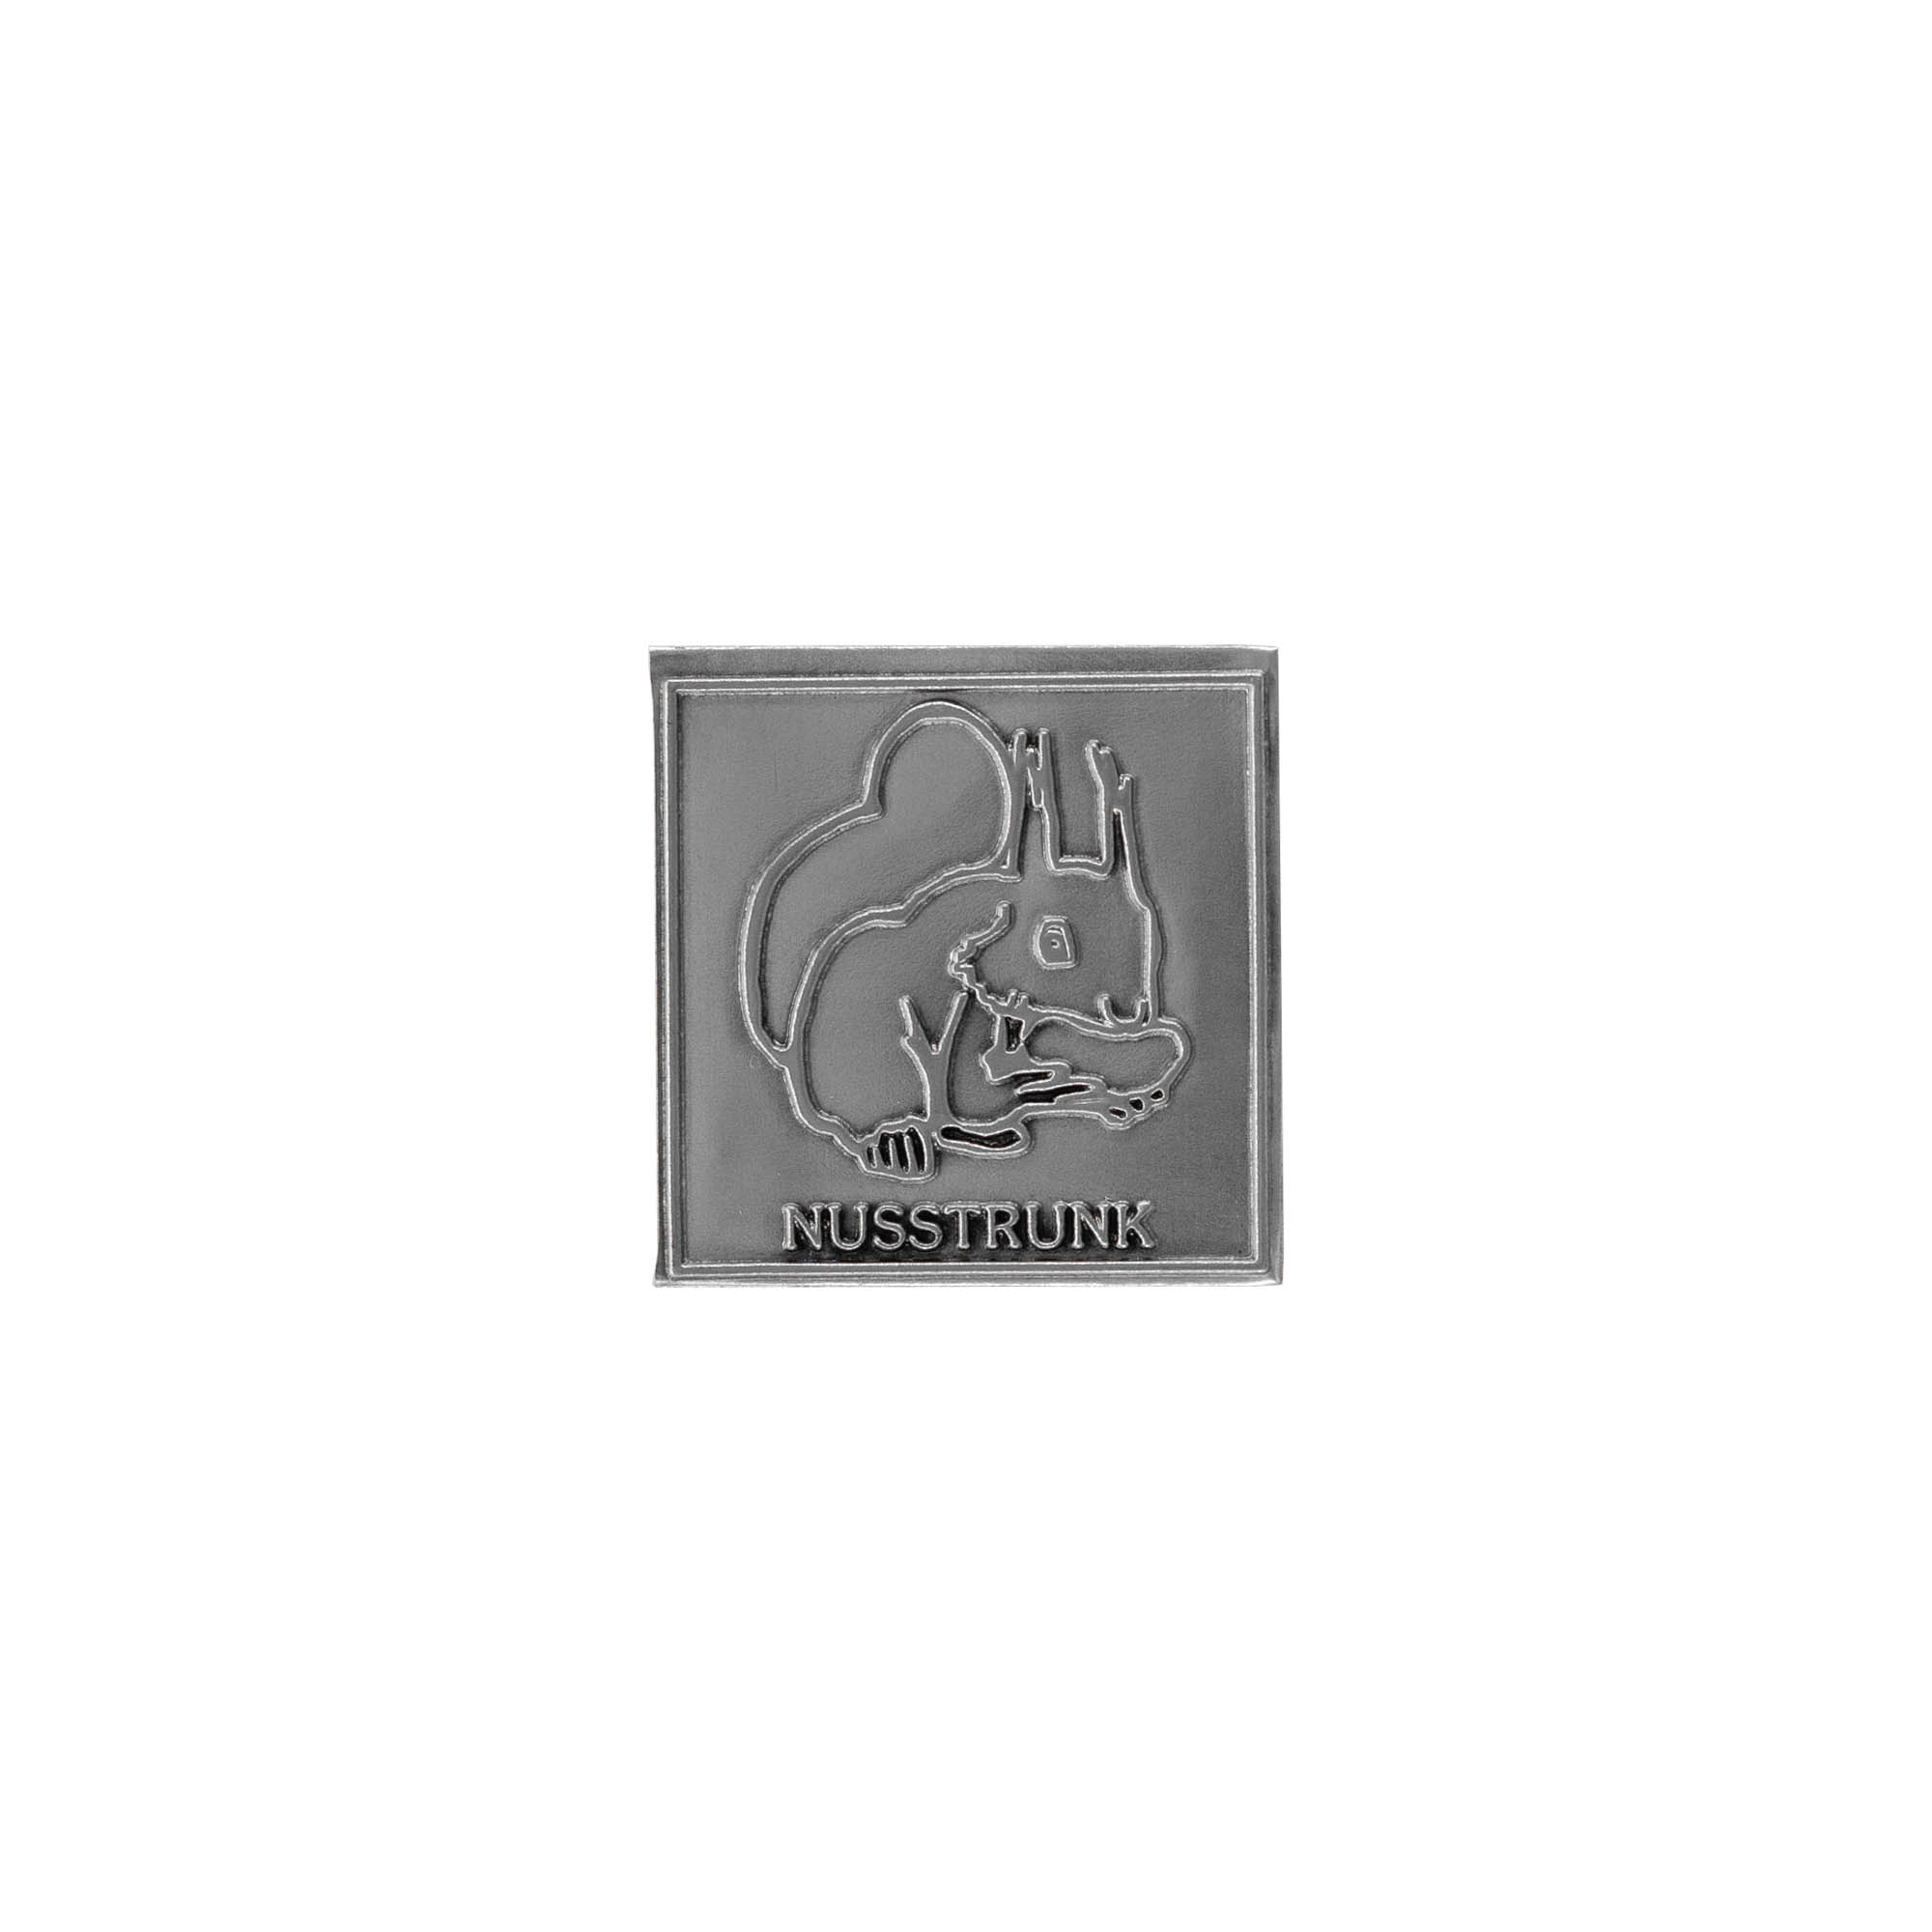 Etykieta cynowa 'Napój orzechowy', kwadratowa, metal, kolor srebrny